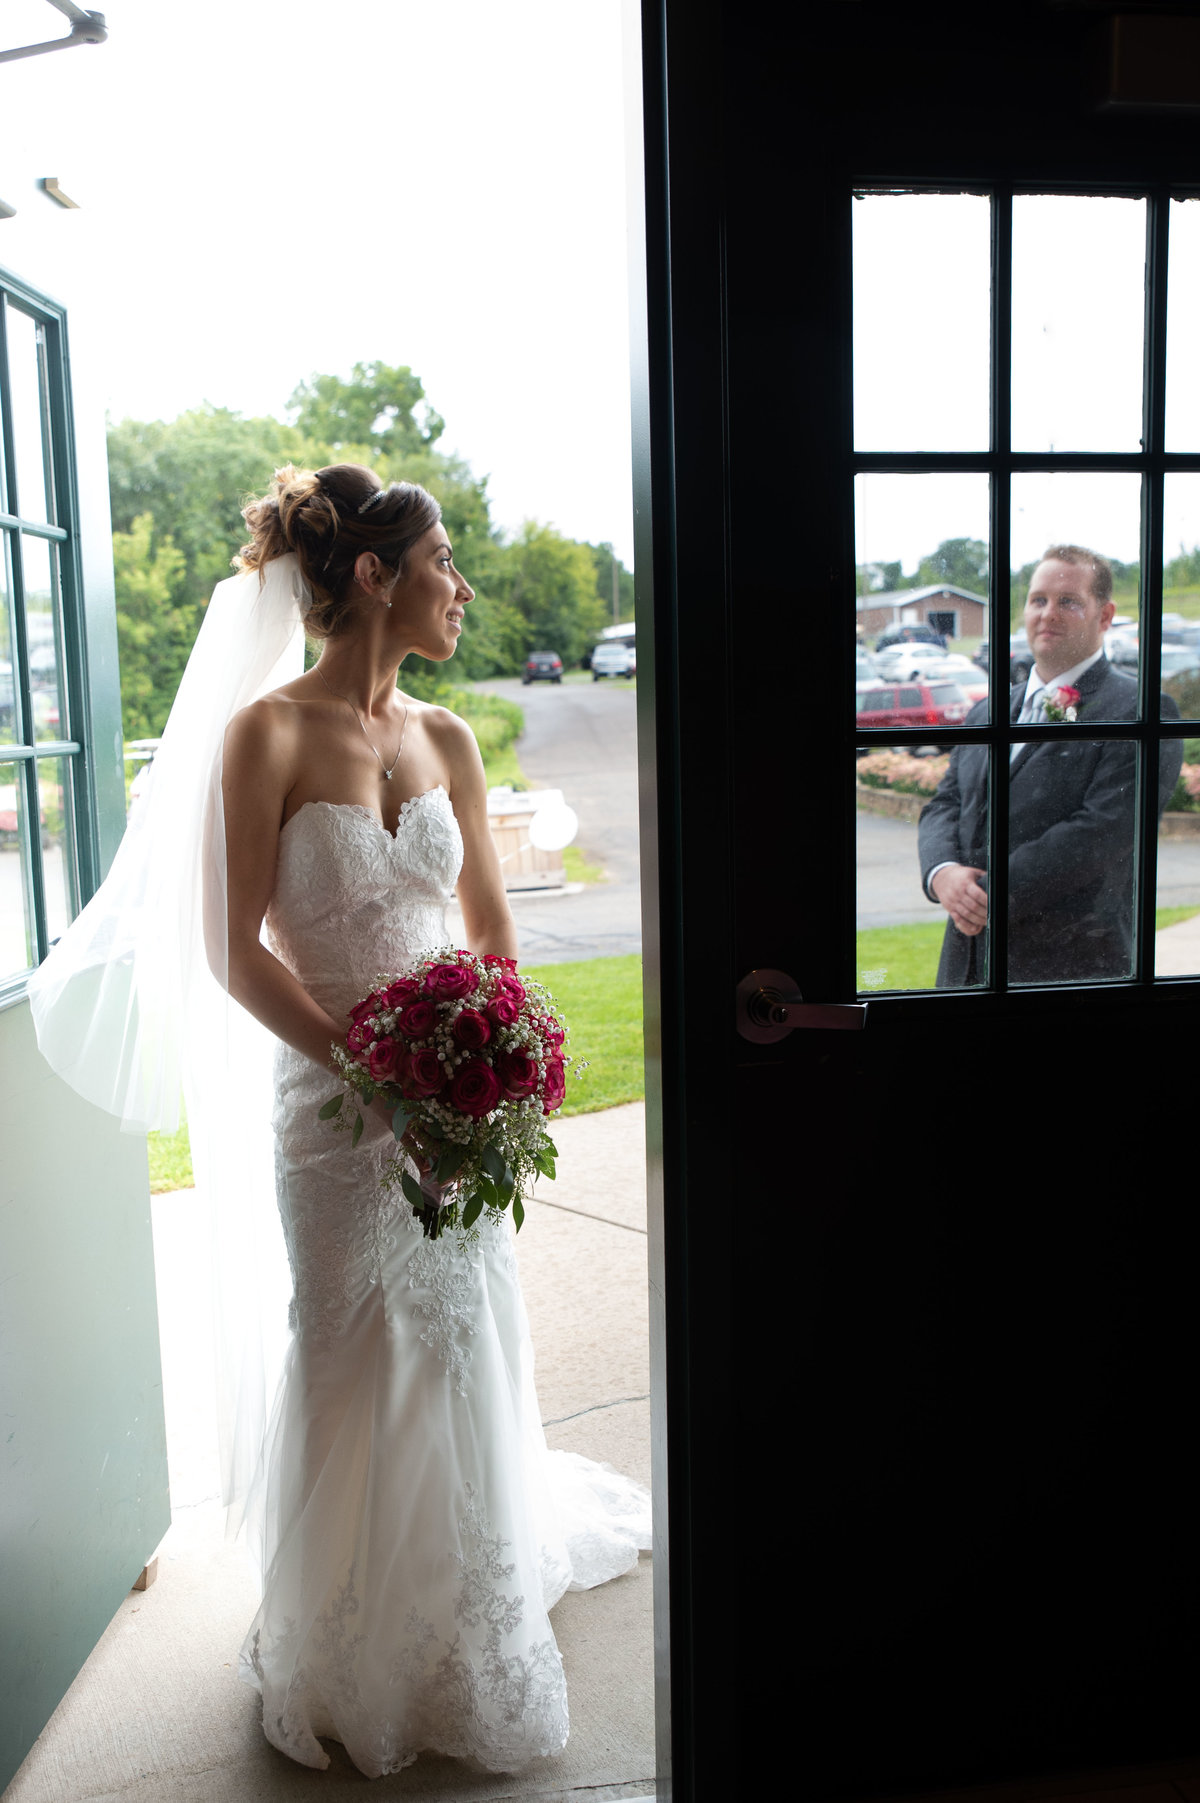 couple exchange look in doorway frame